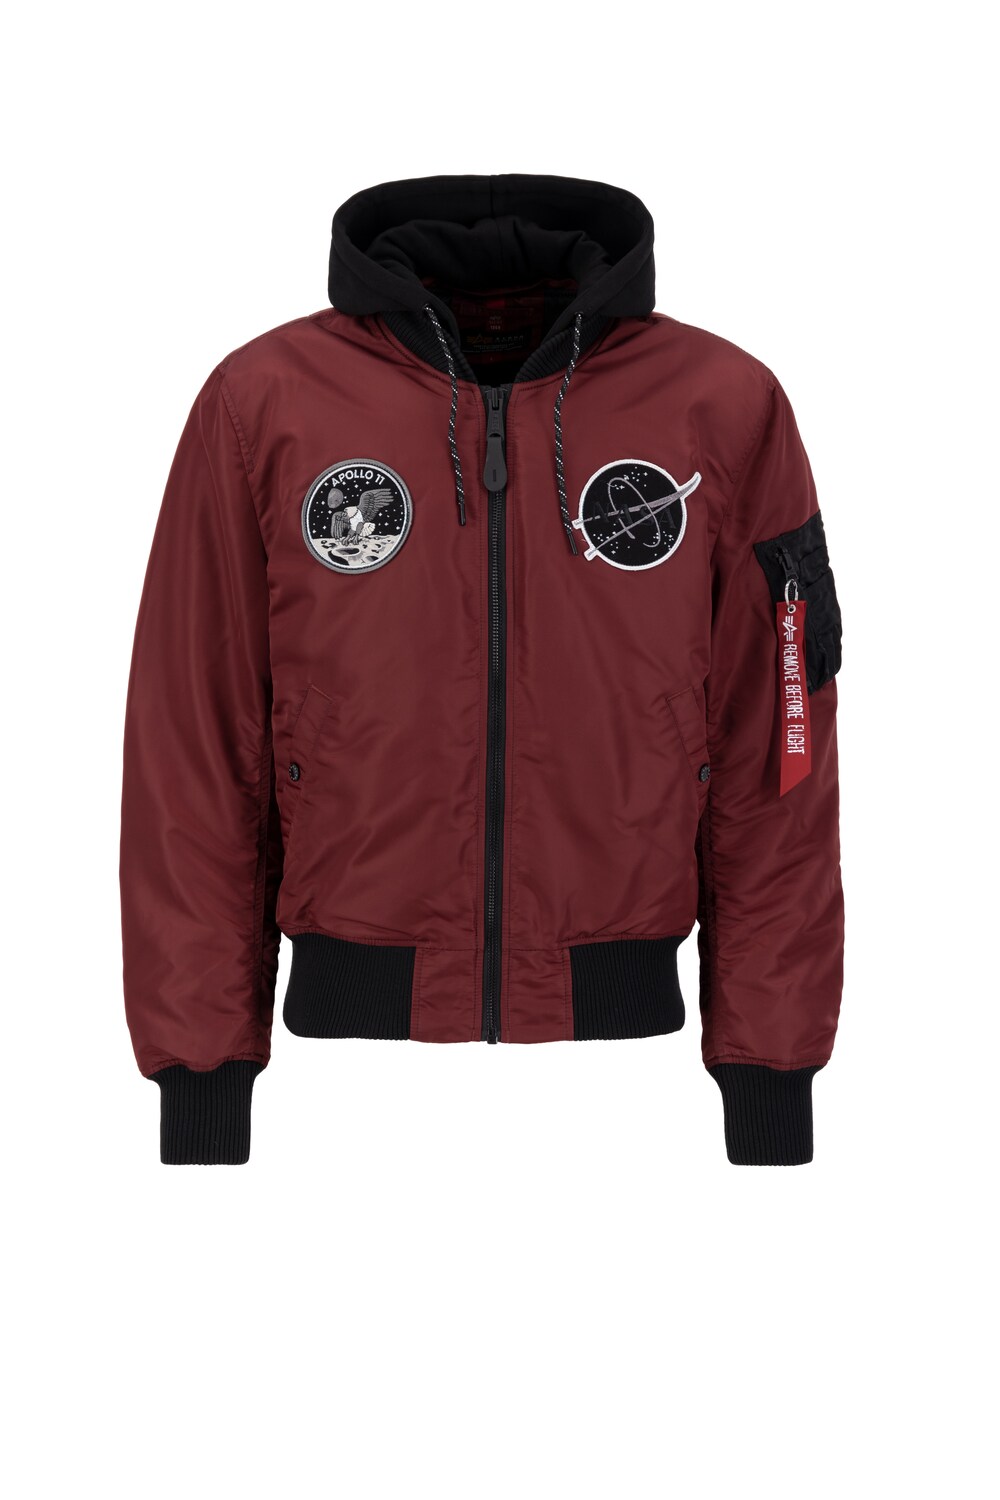 Межсезонная куртка Alpha Industries Flight Jacket MA-1 VF, красный